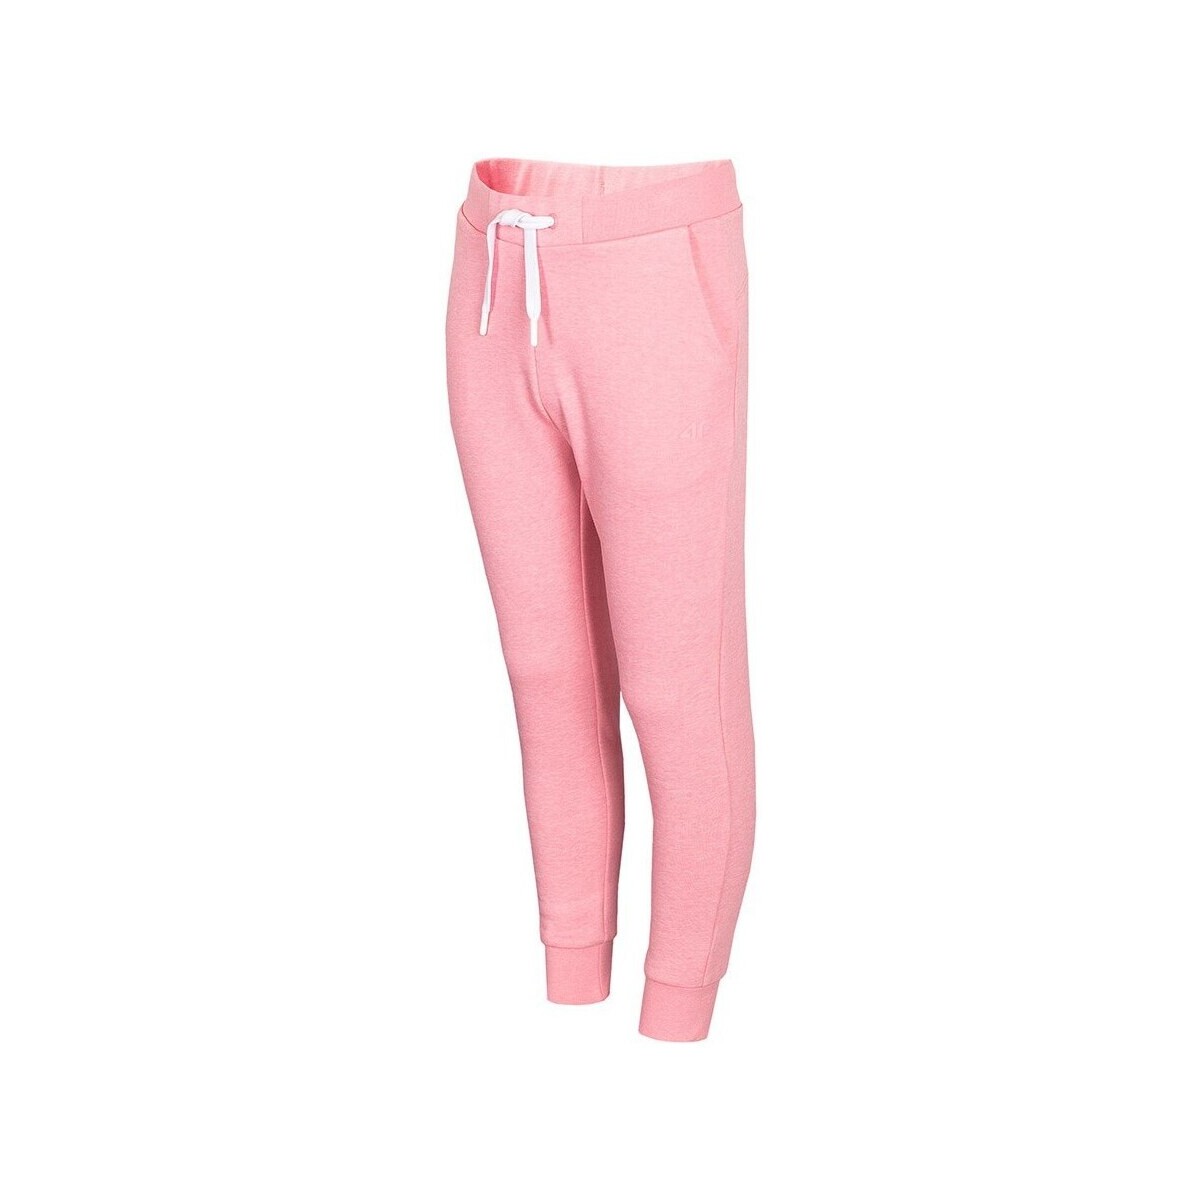 Textiel Meisjes Broeken / Pantalons 4F JSPDD001 Roze